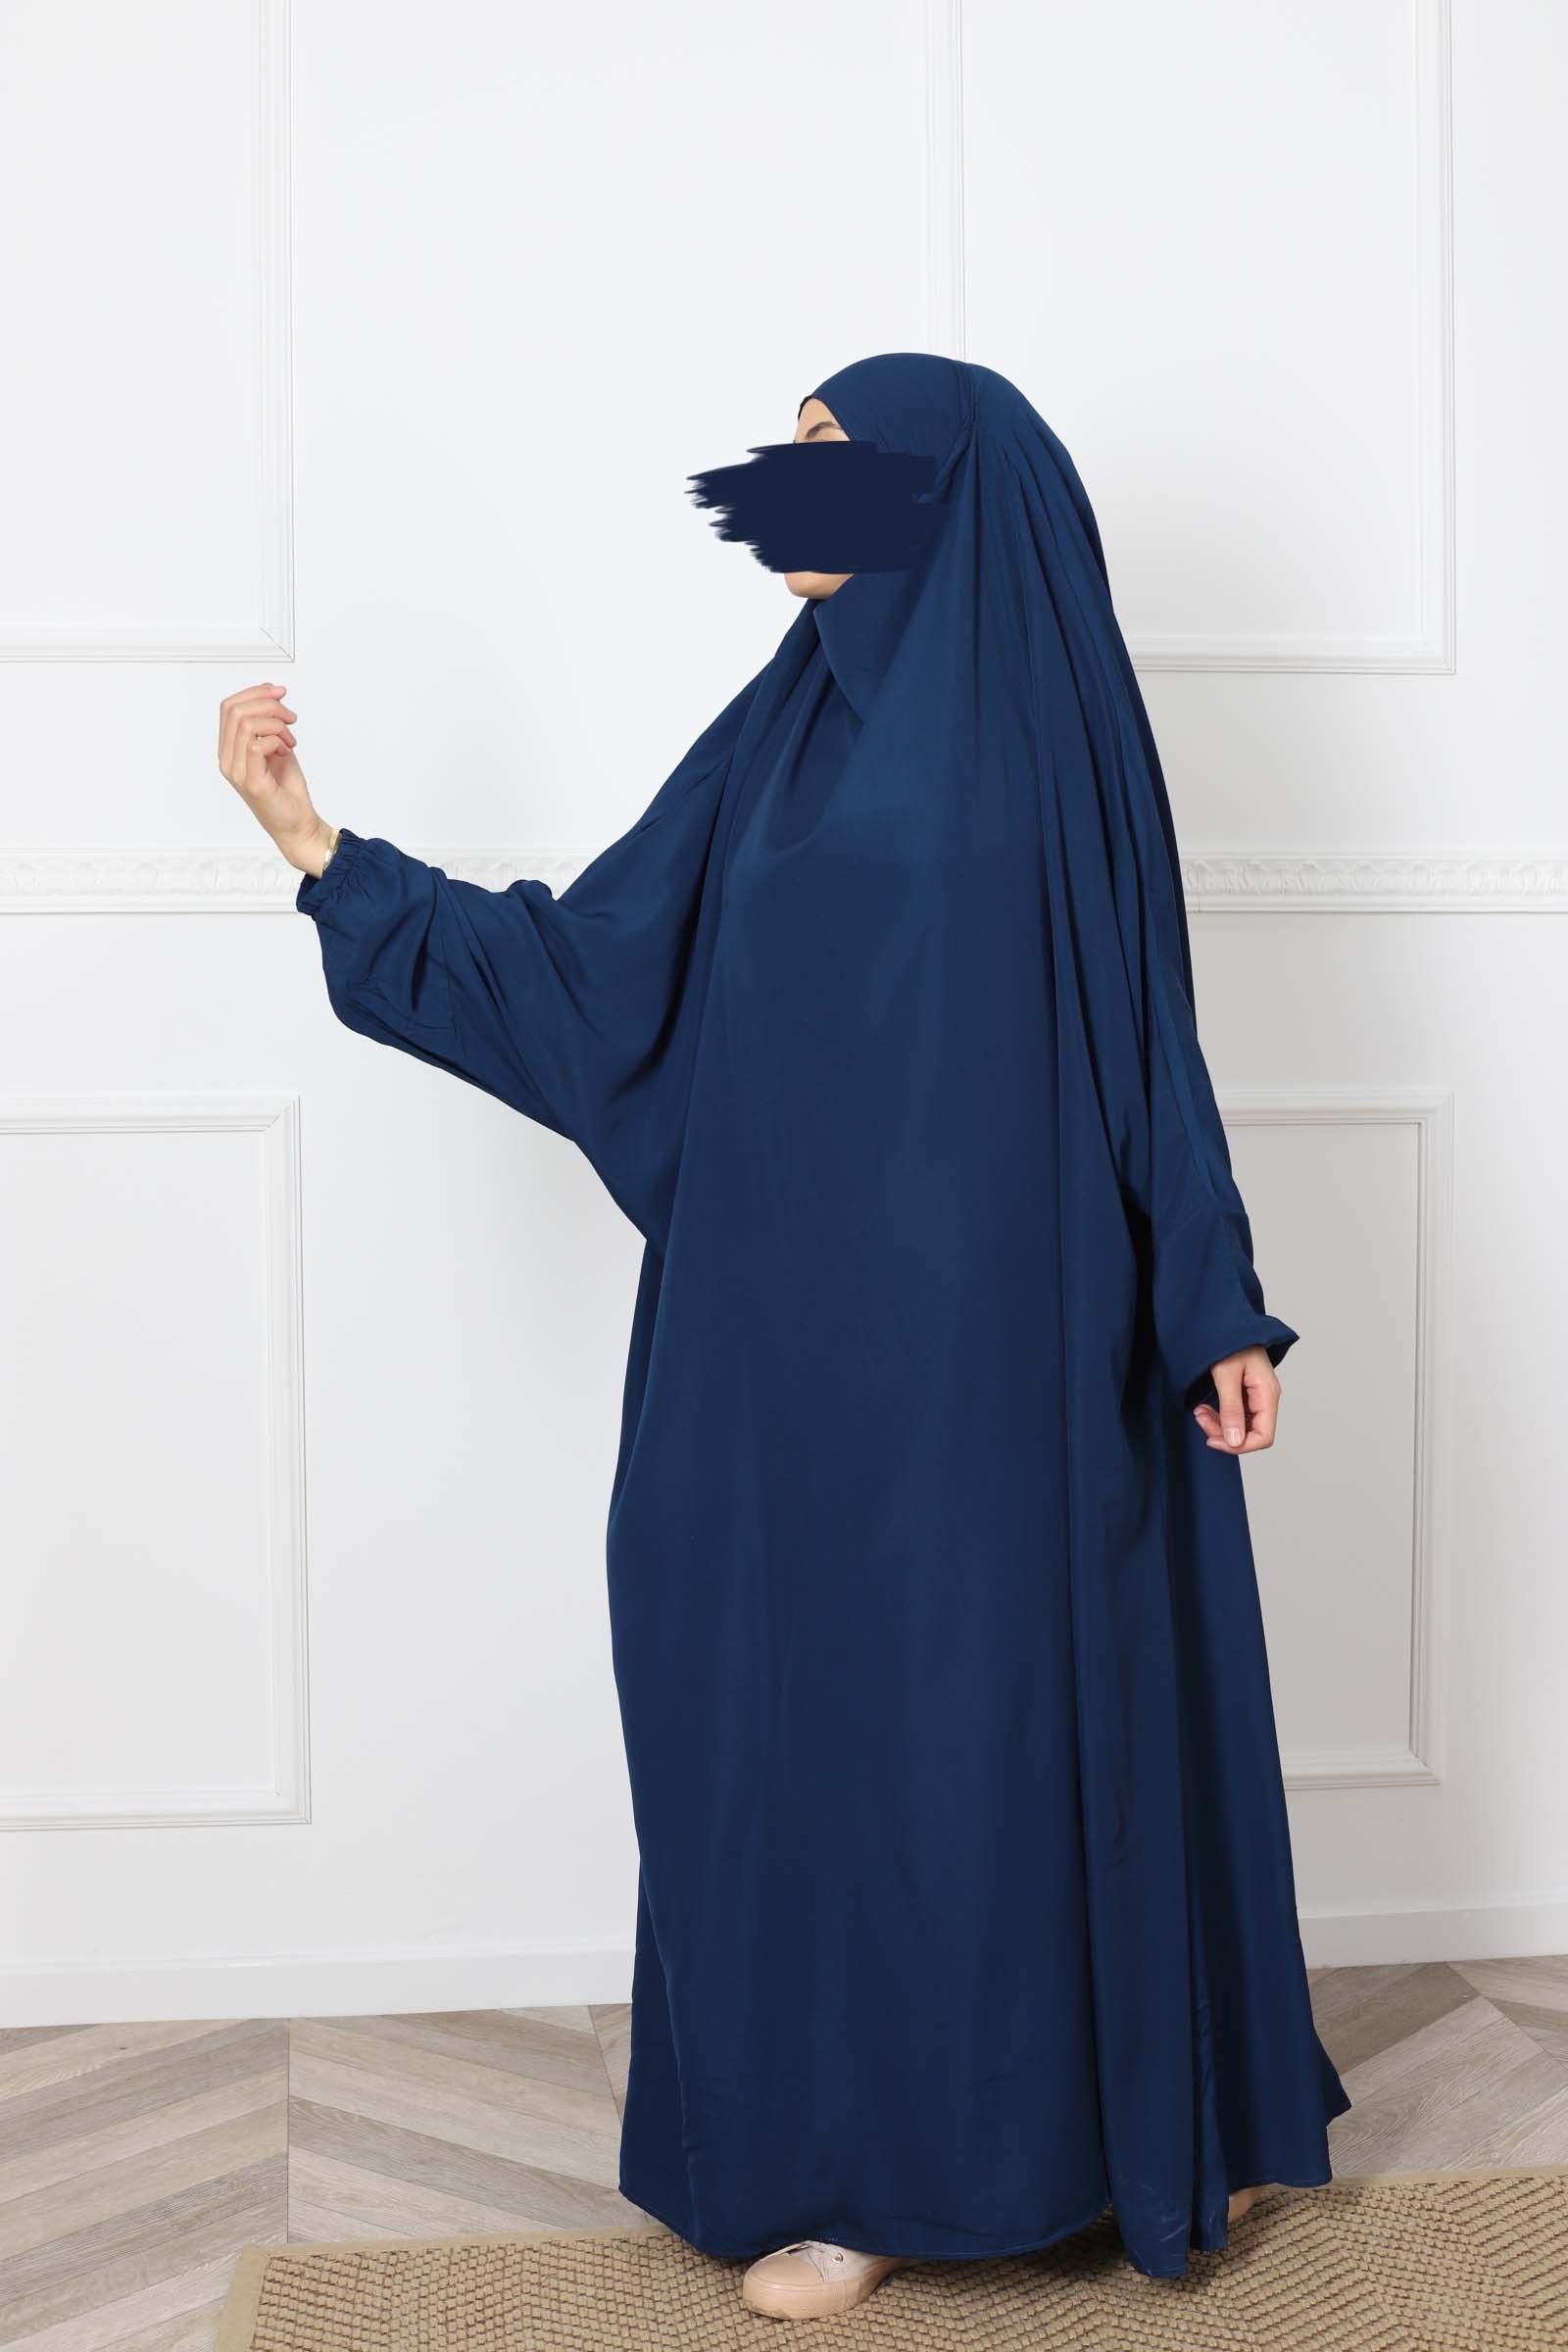 One piece jilbab